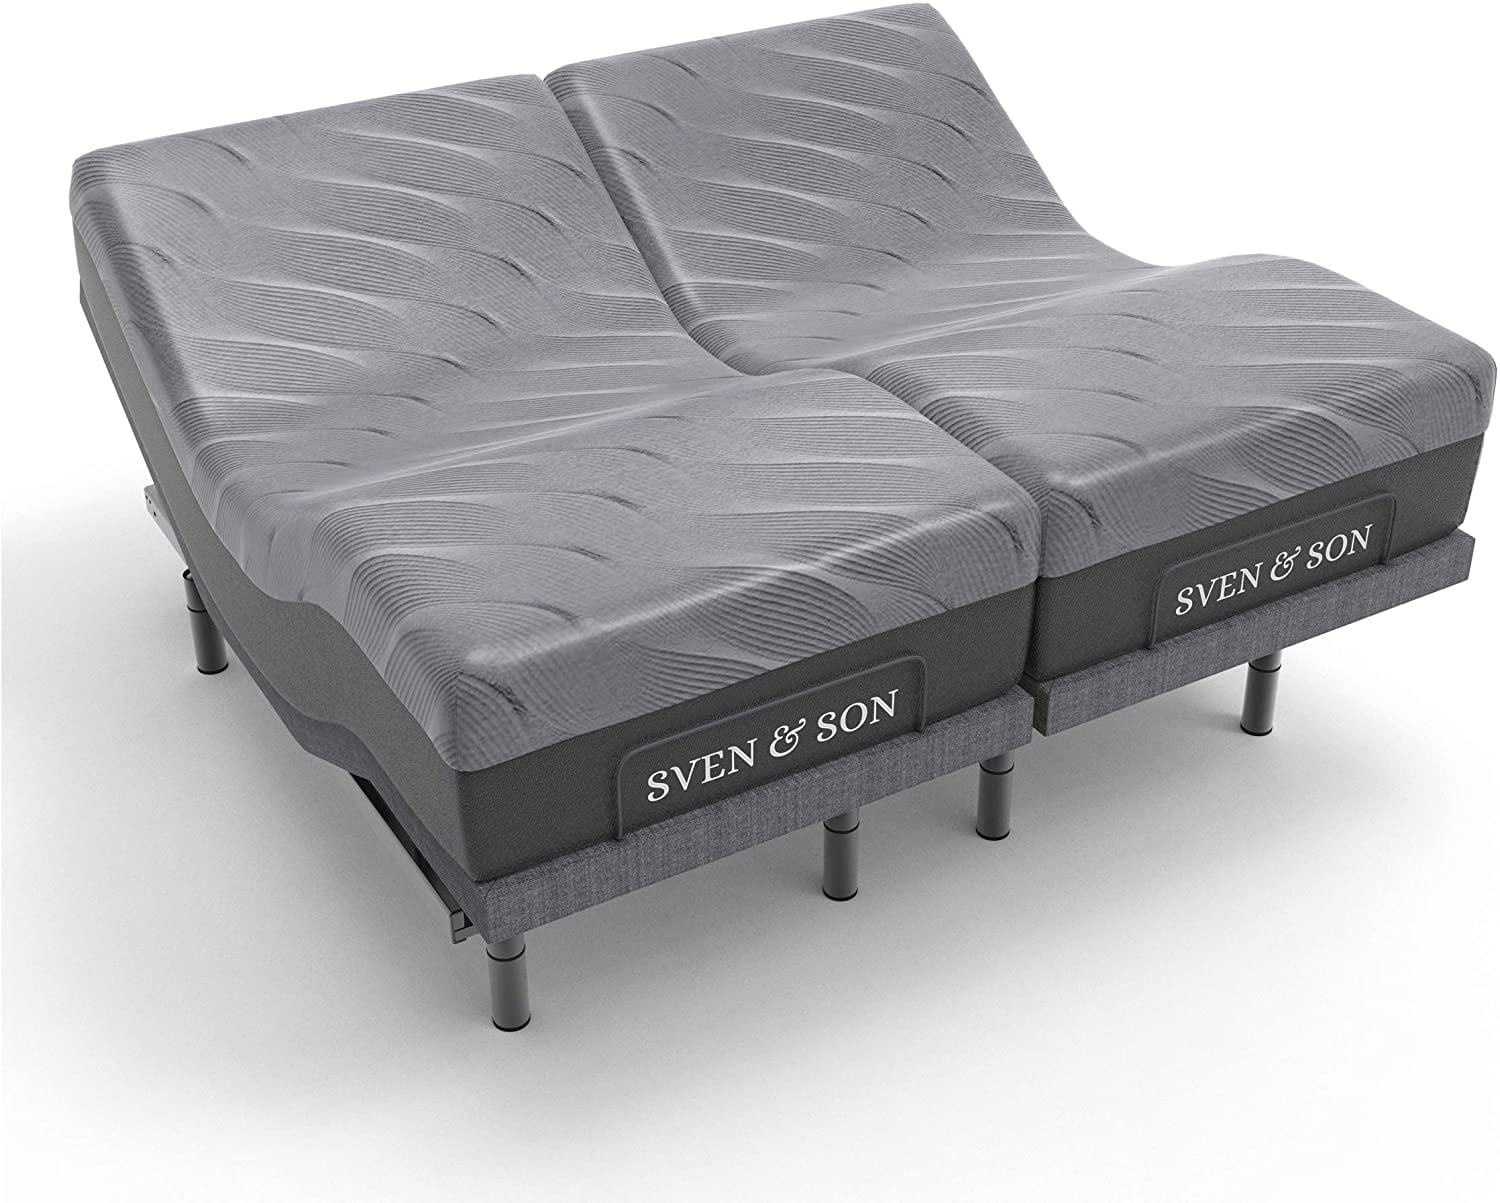 Sven Son Split King Adjustable Bed, Should I Get A Split King Adjustable Bed